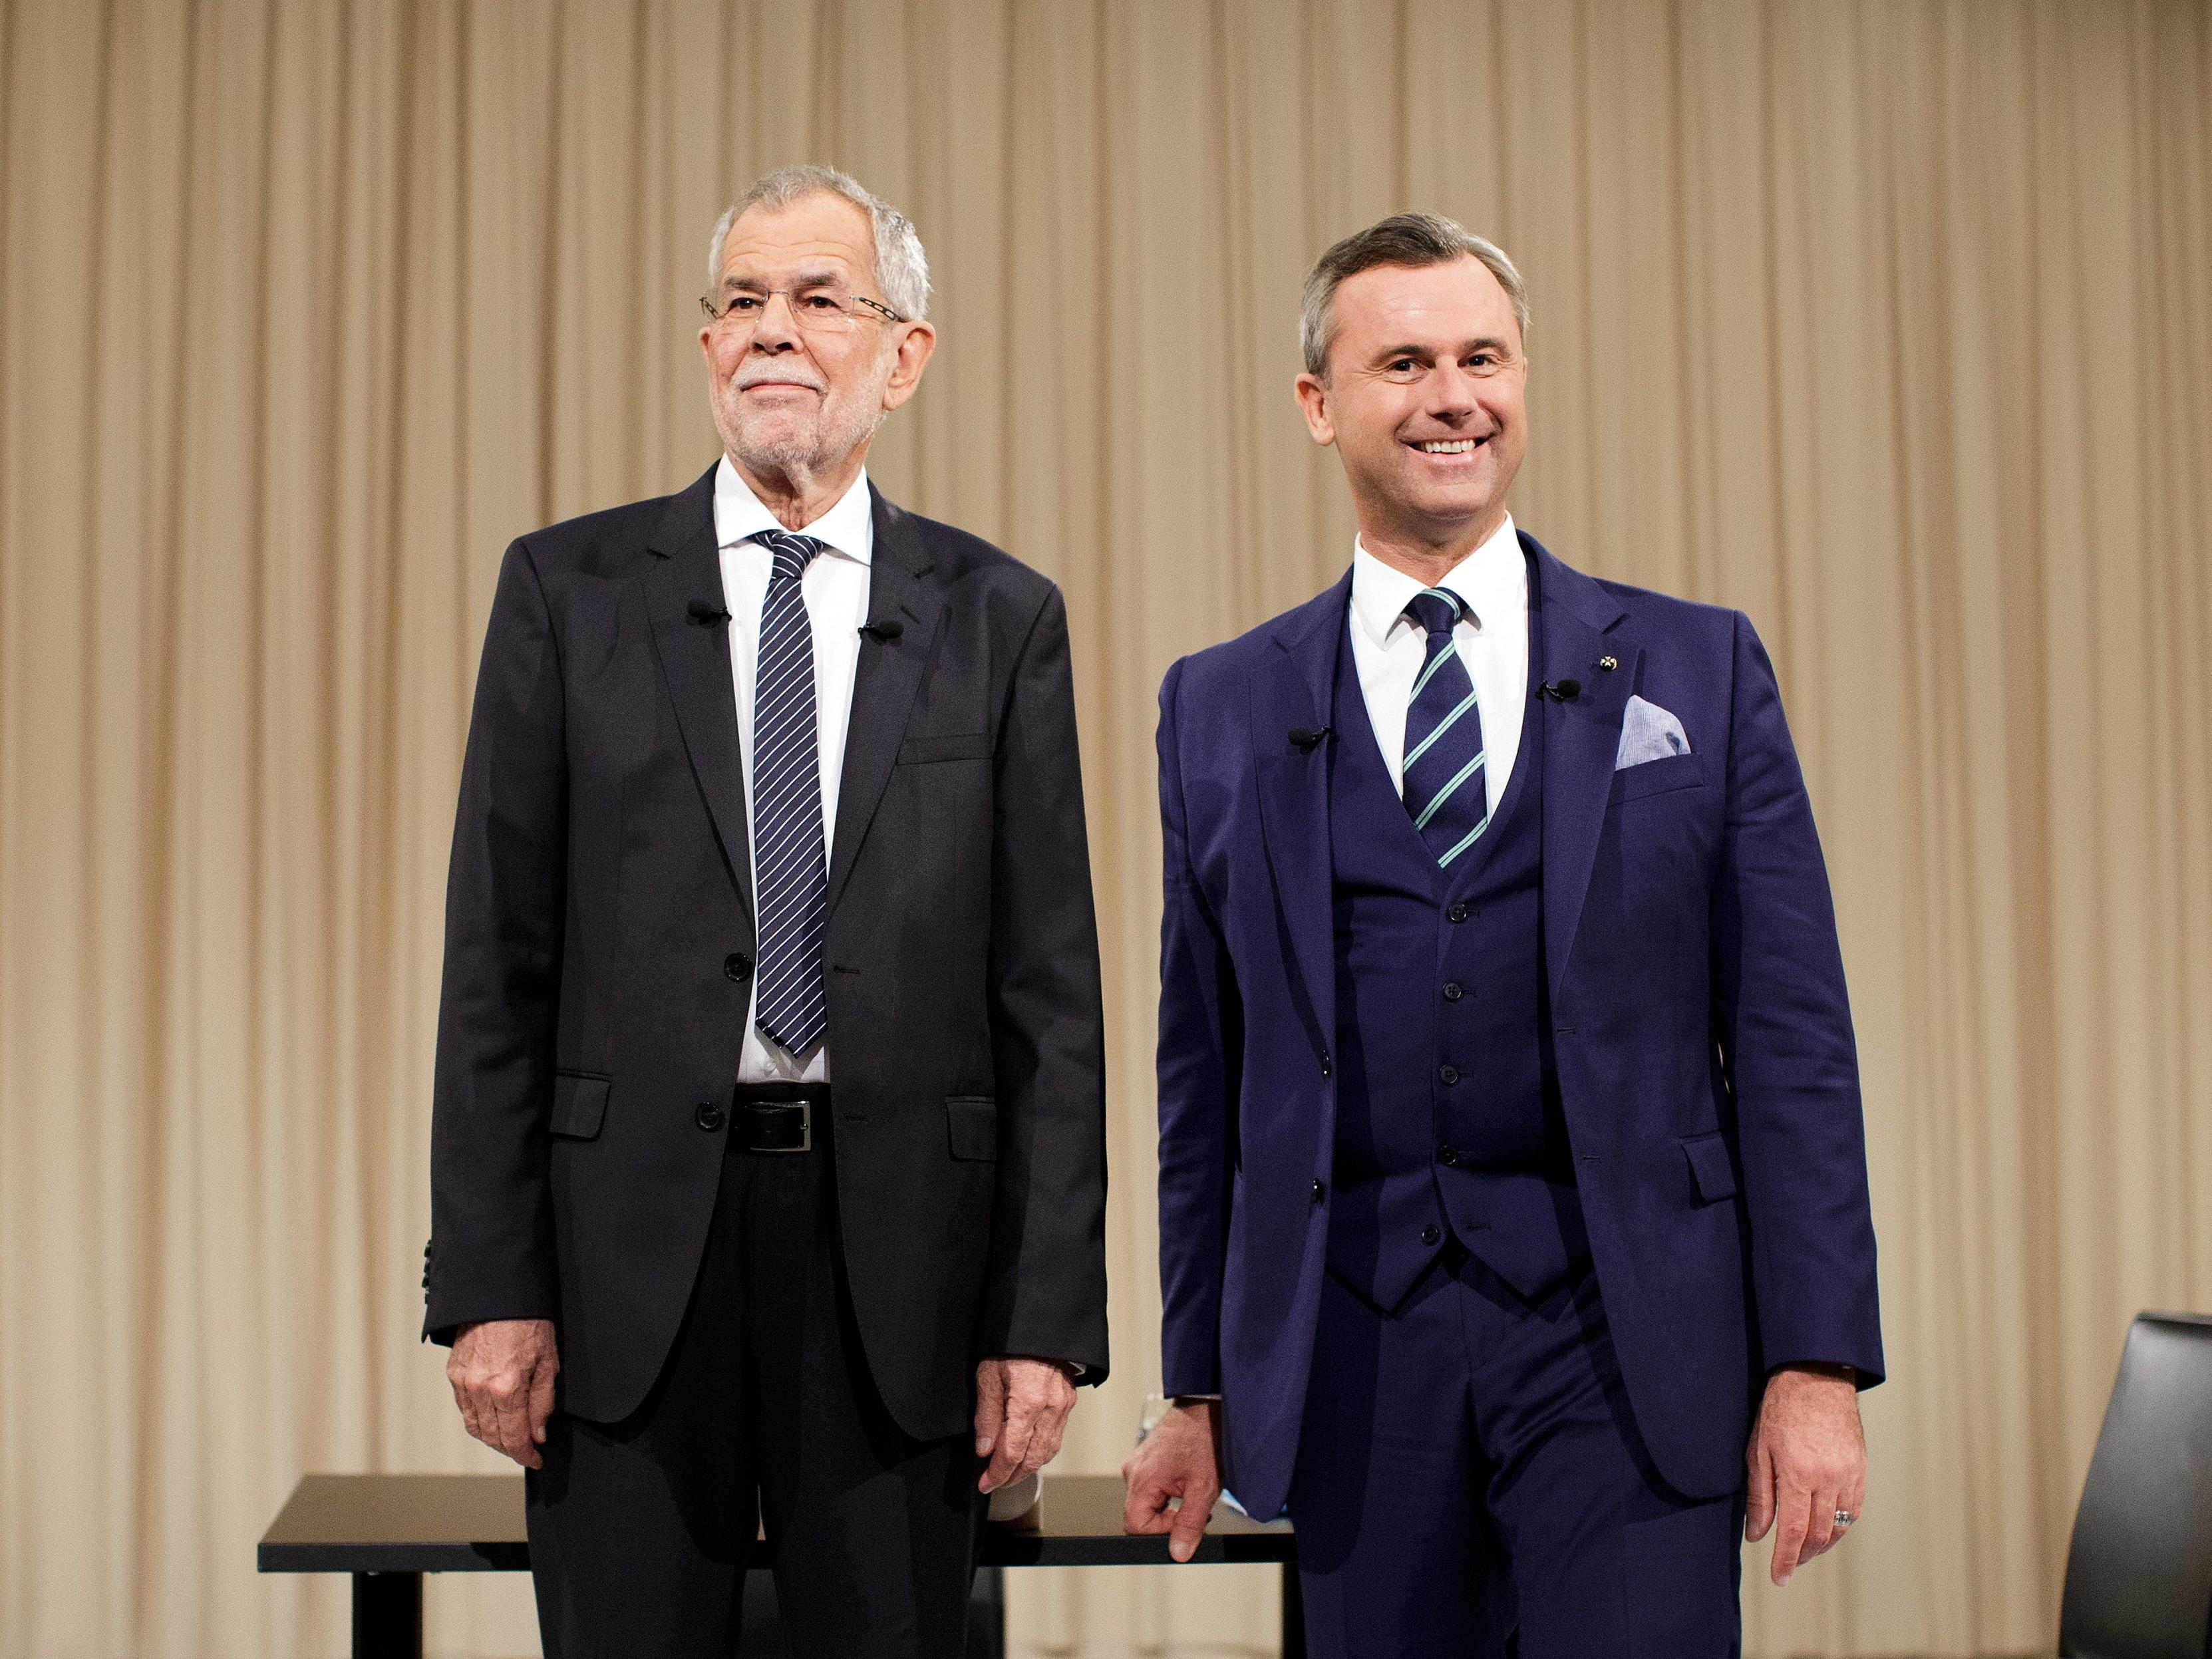 Die Kandidaten bei der ATV-Diskussion "Meine Wahl - Das Duell" in Wien